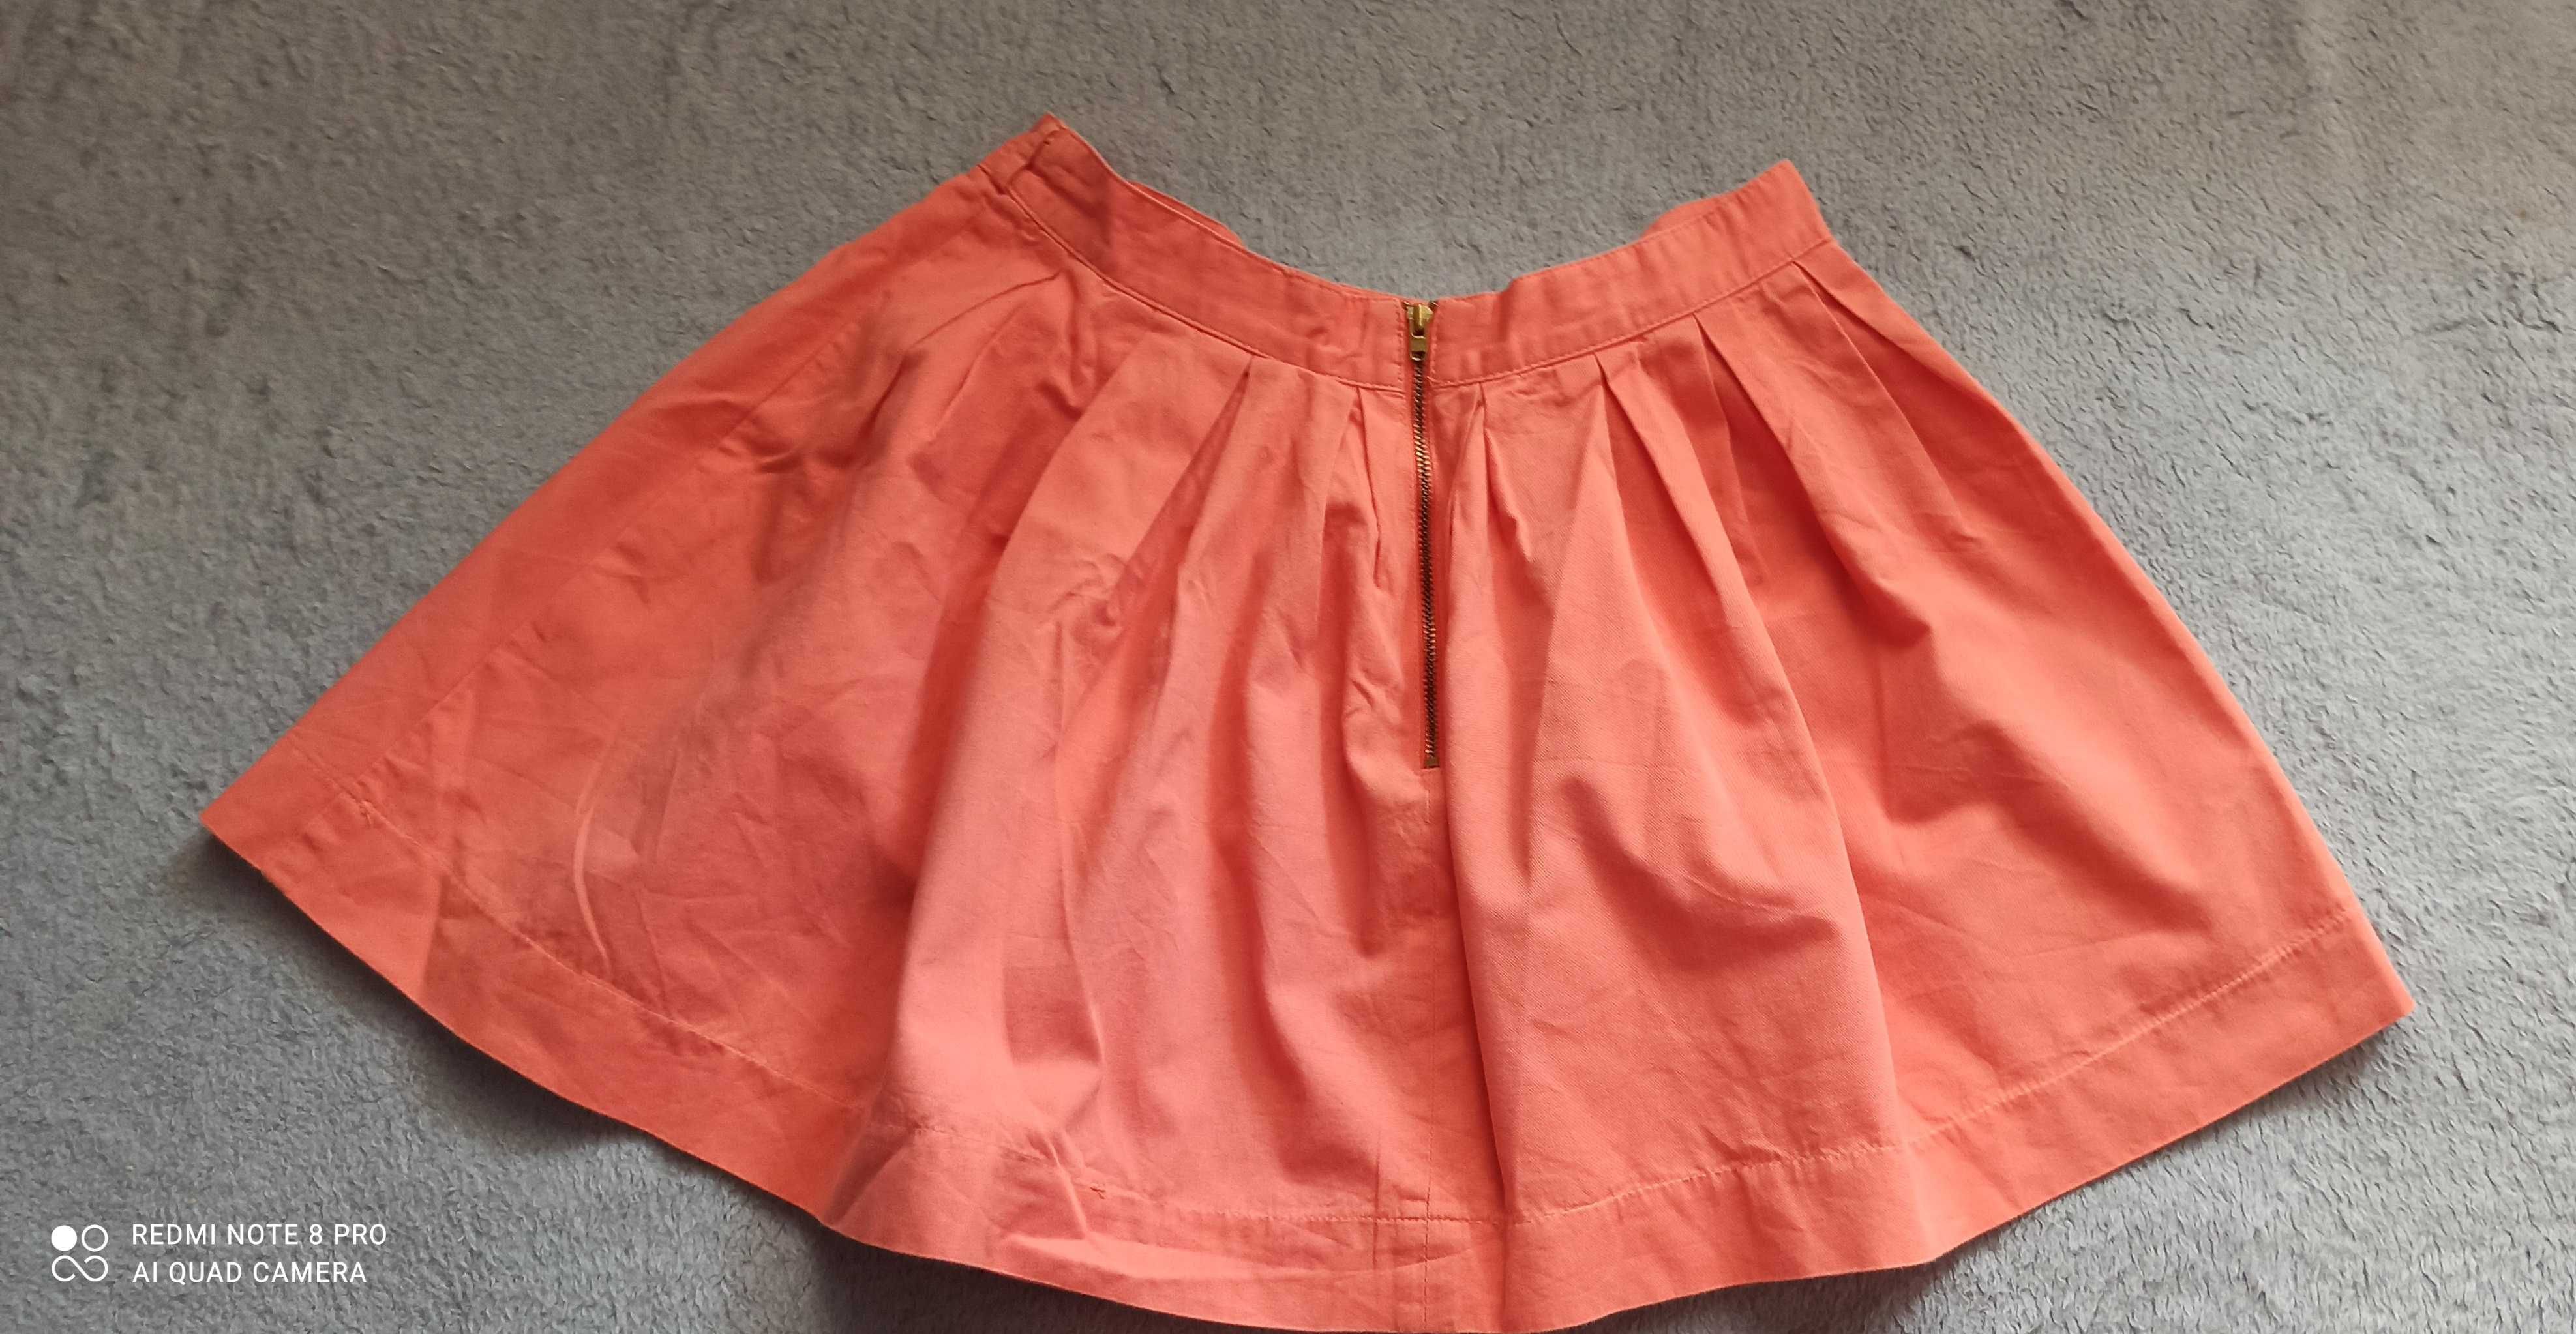 Spódnica pomarańczowa rozmiar S